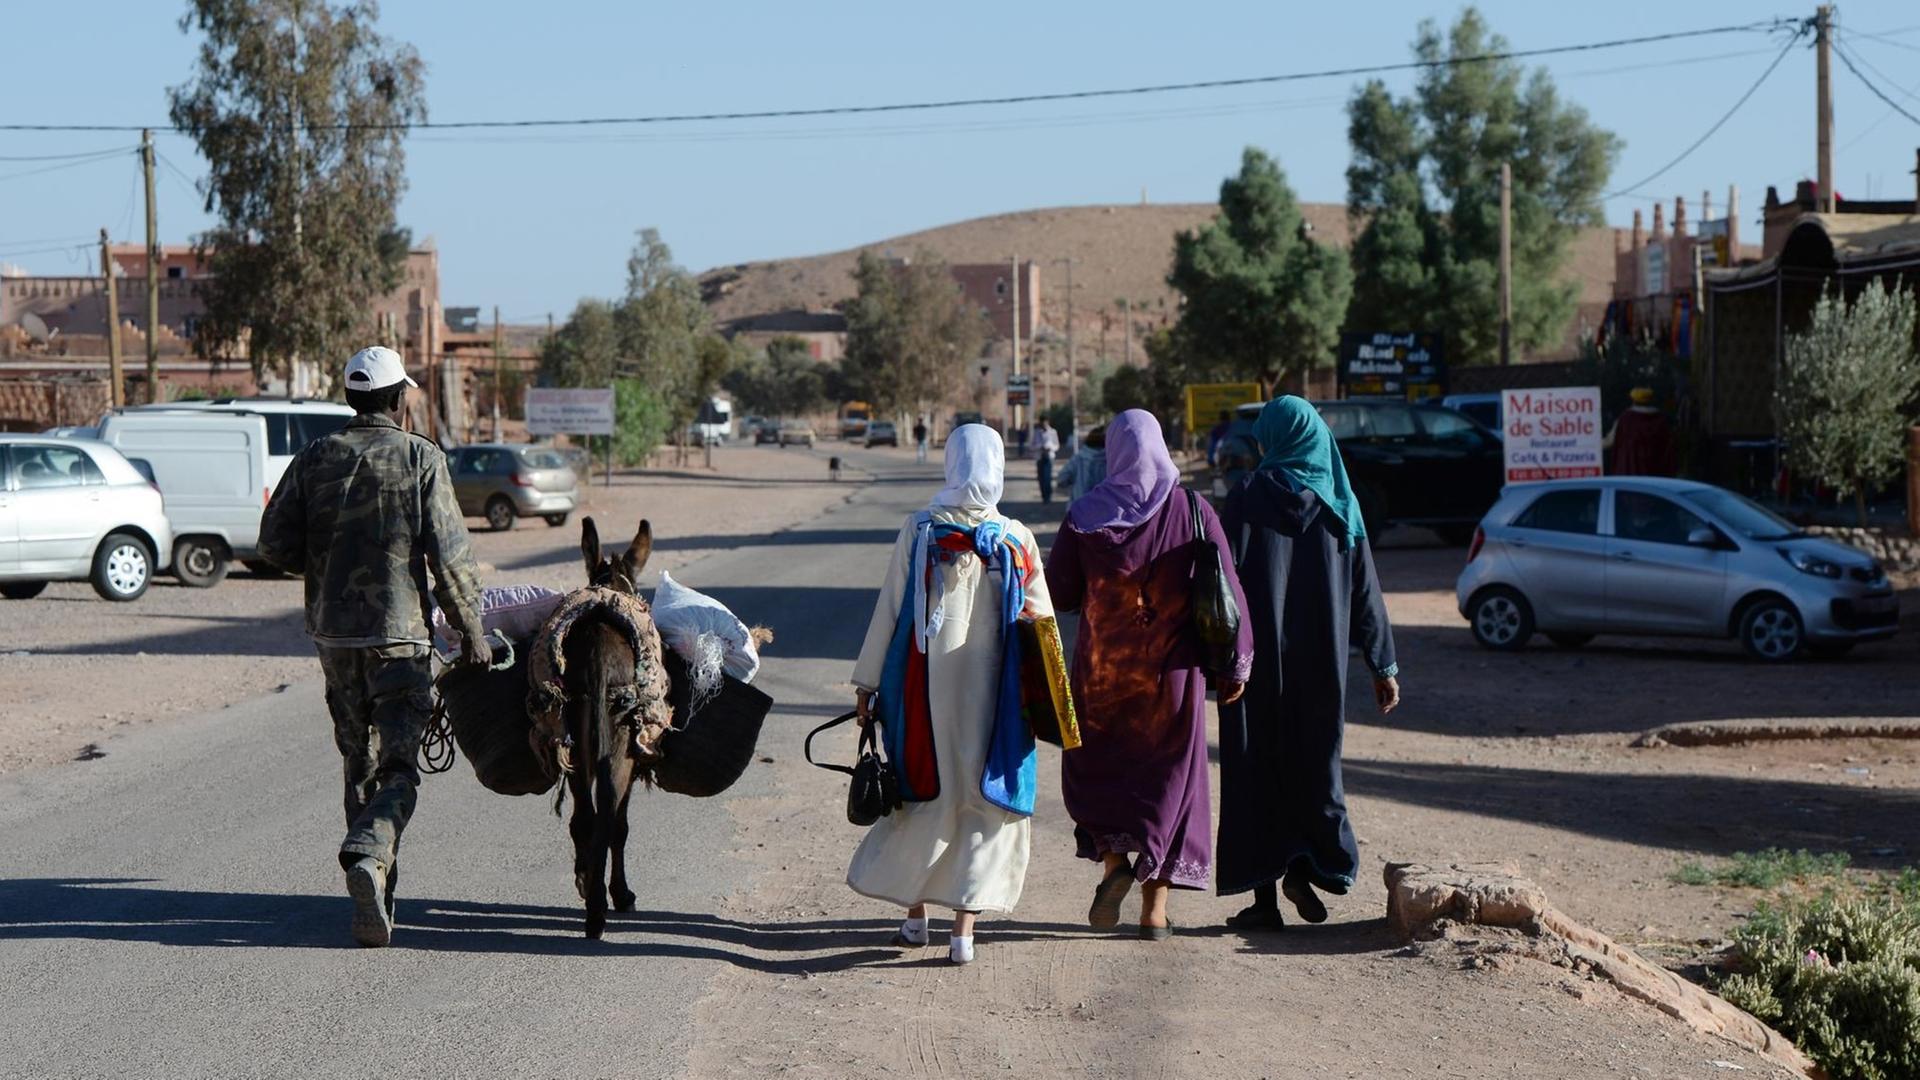  Ein Mann mit einem Esel und drei Frauen in traditioneller Kleidung gehen auf einer Straße in Marokko.